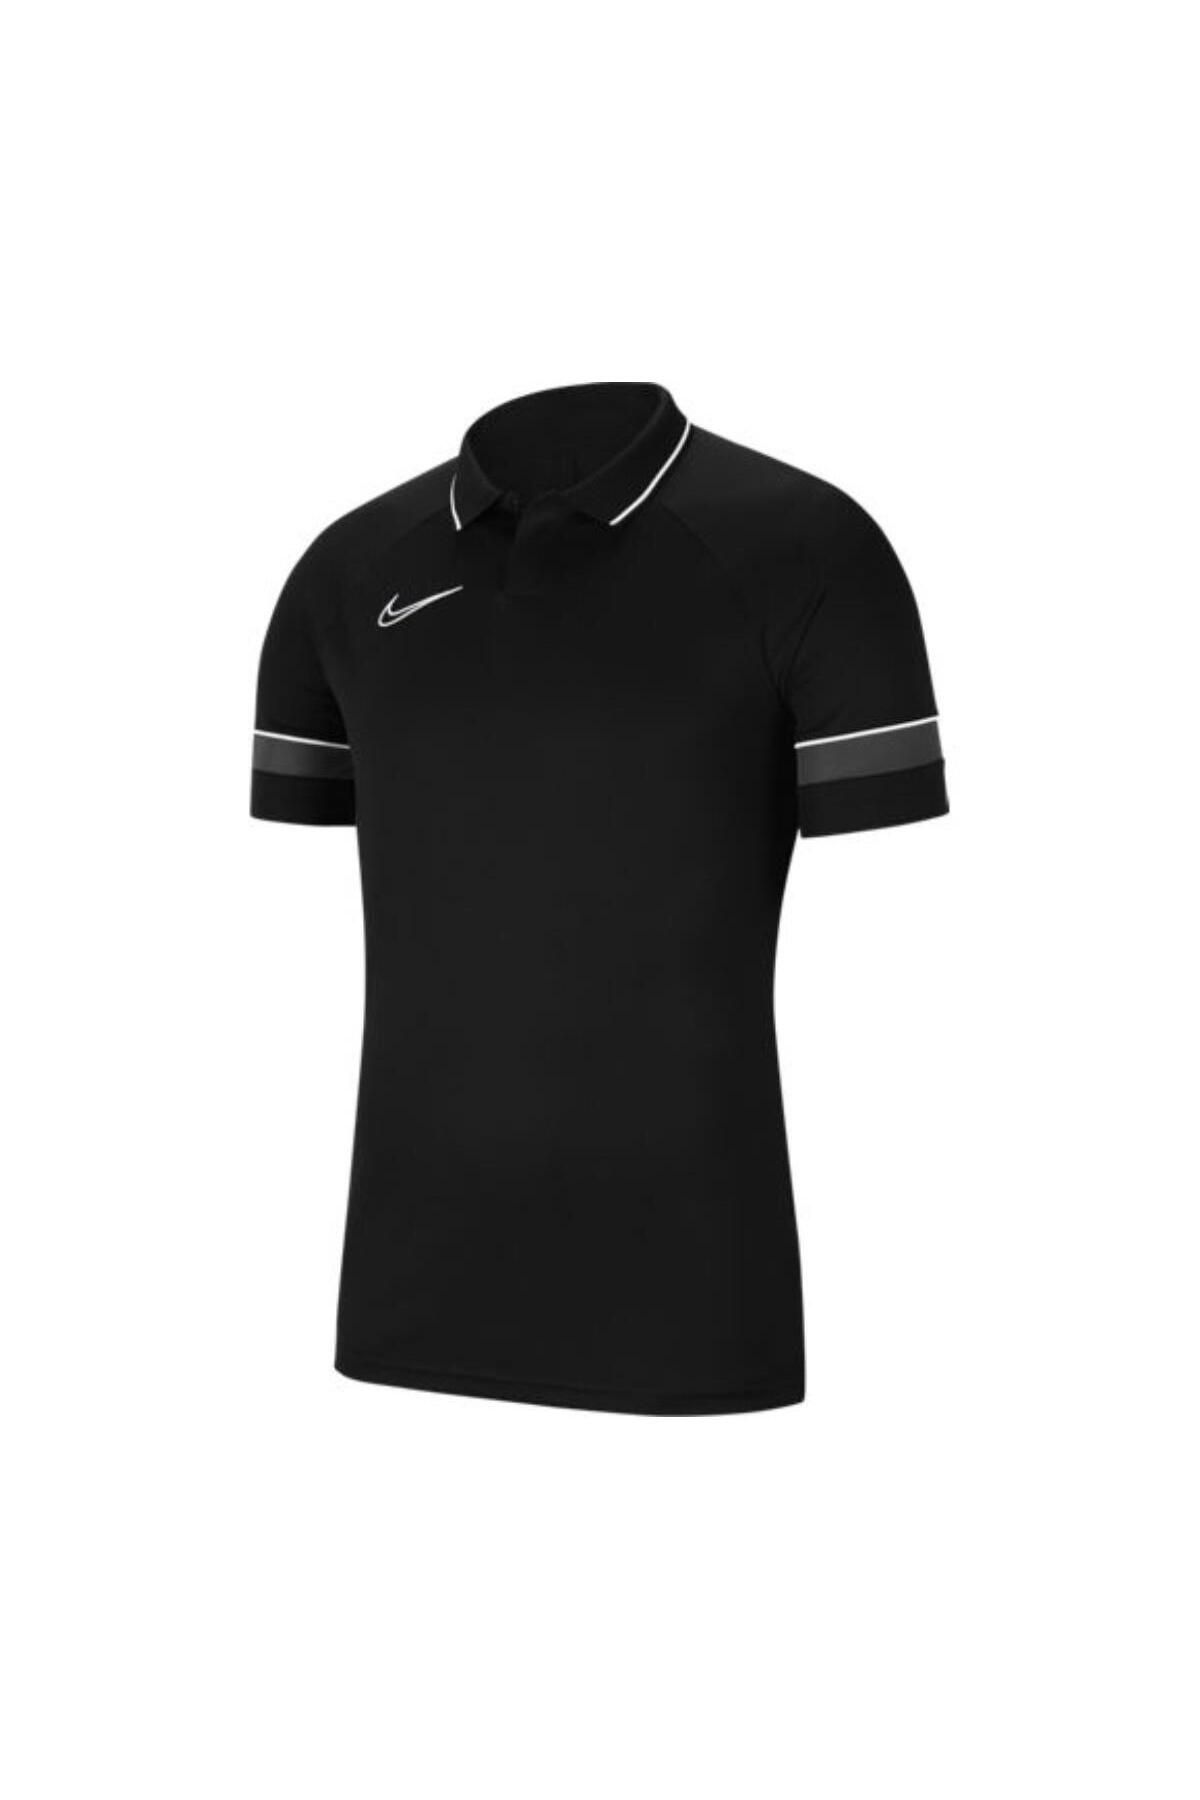 Nike Cw6104 Dri Fit Academy Siyah